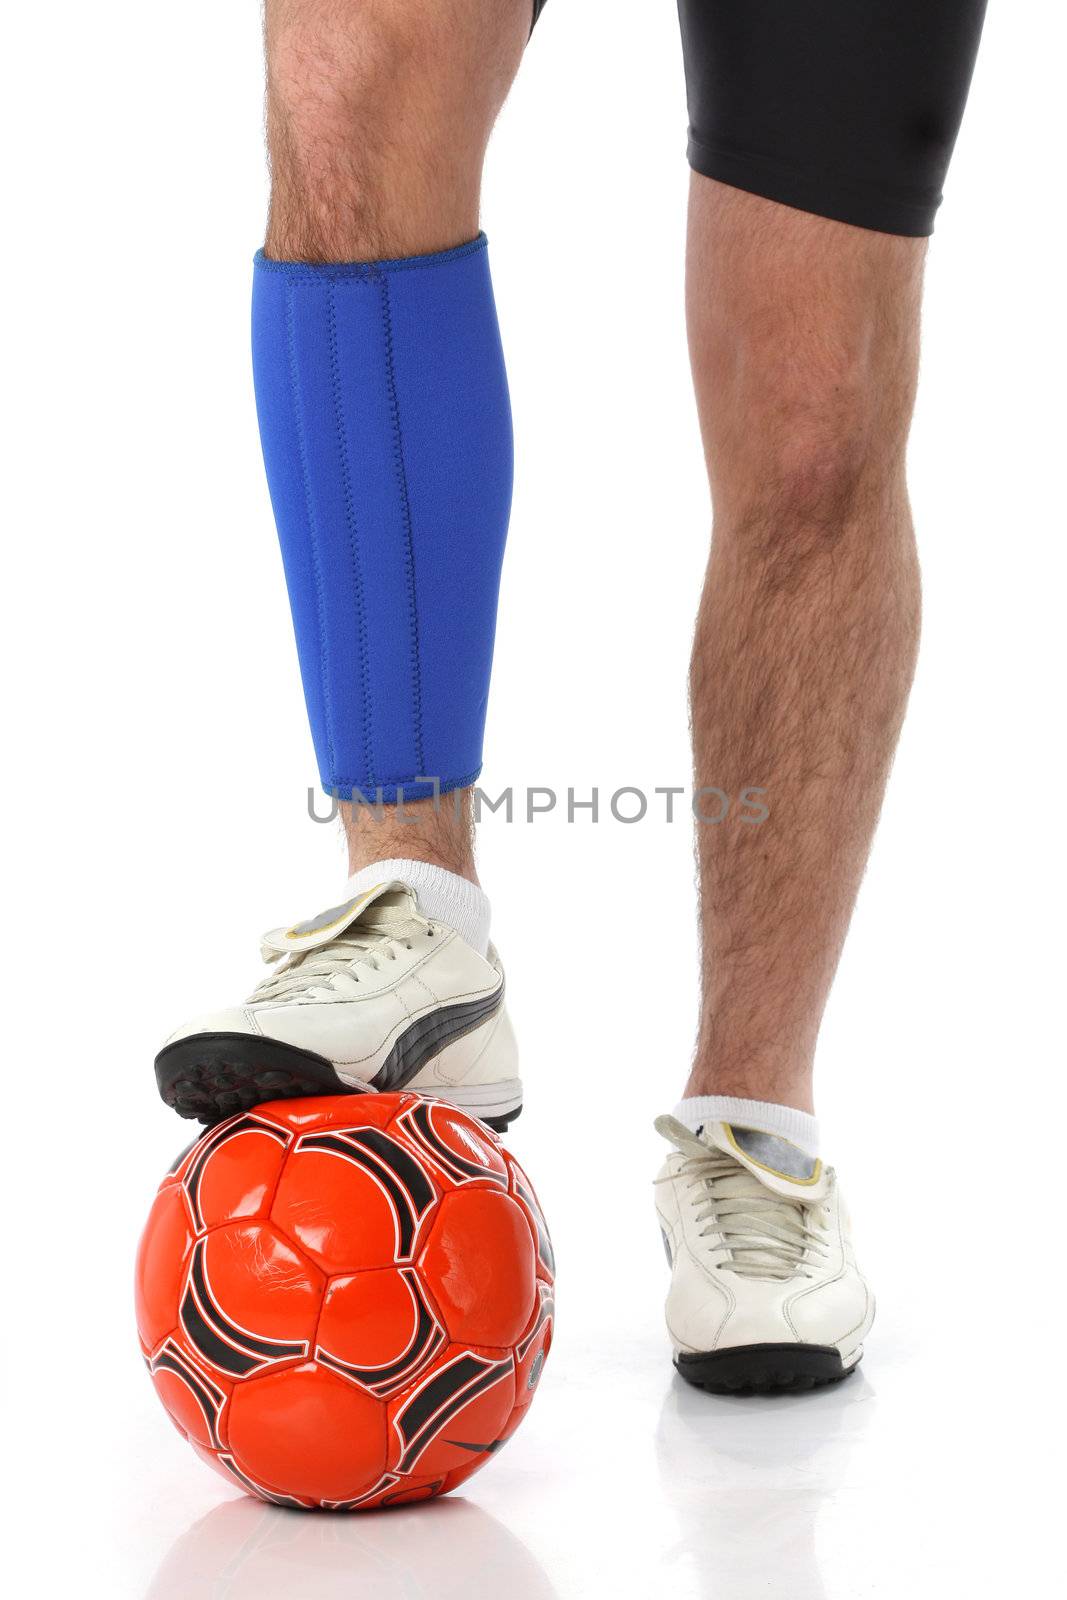 Soccer player wearing a neoprene brace by Erdosain